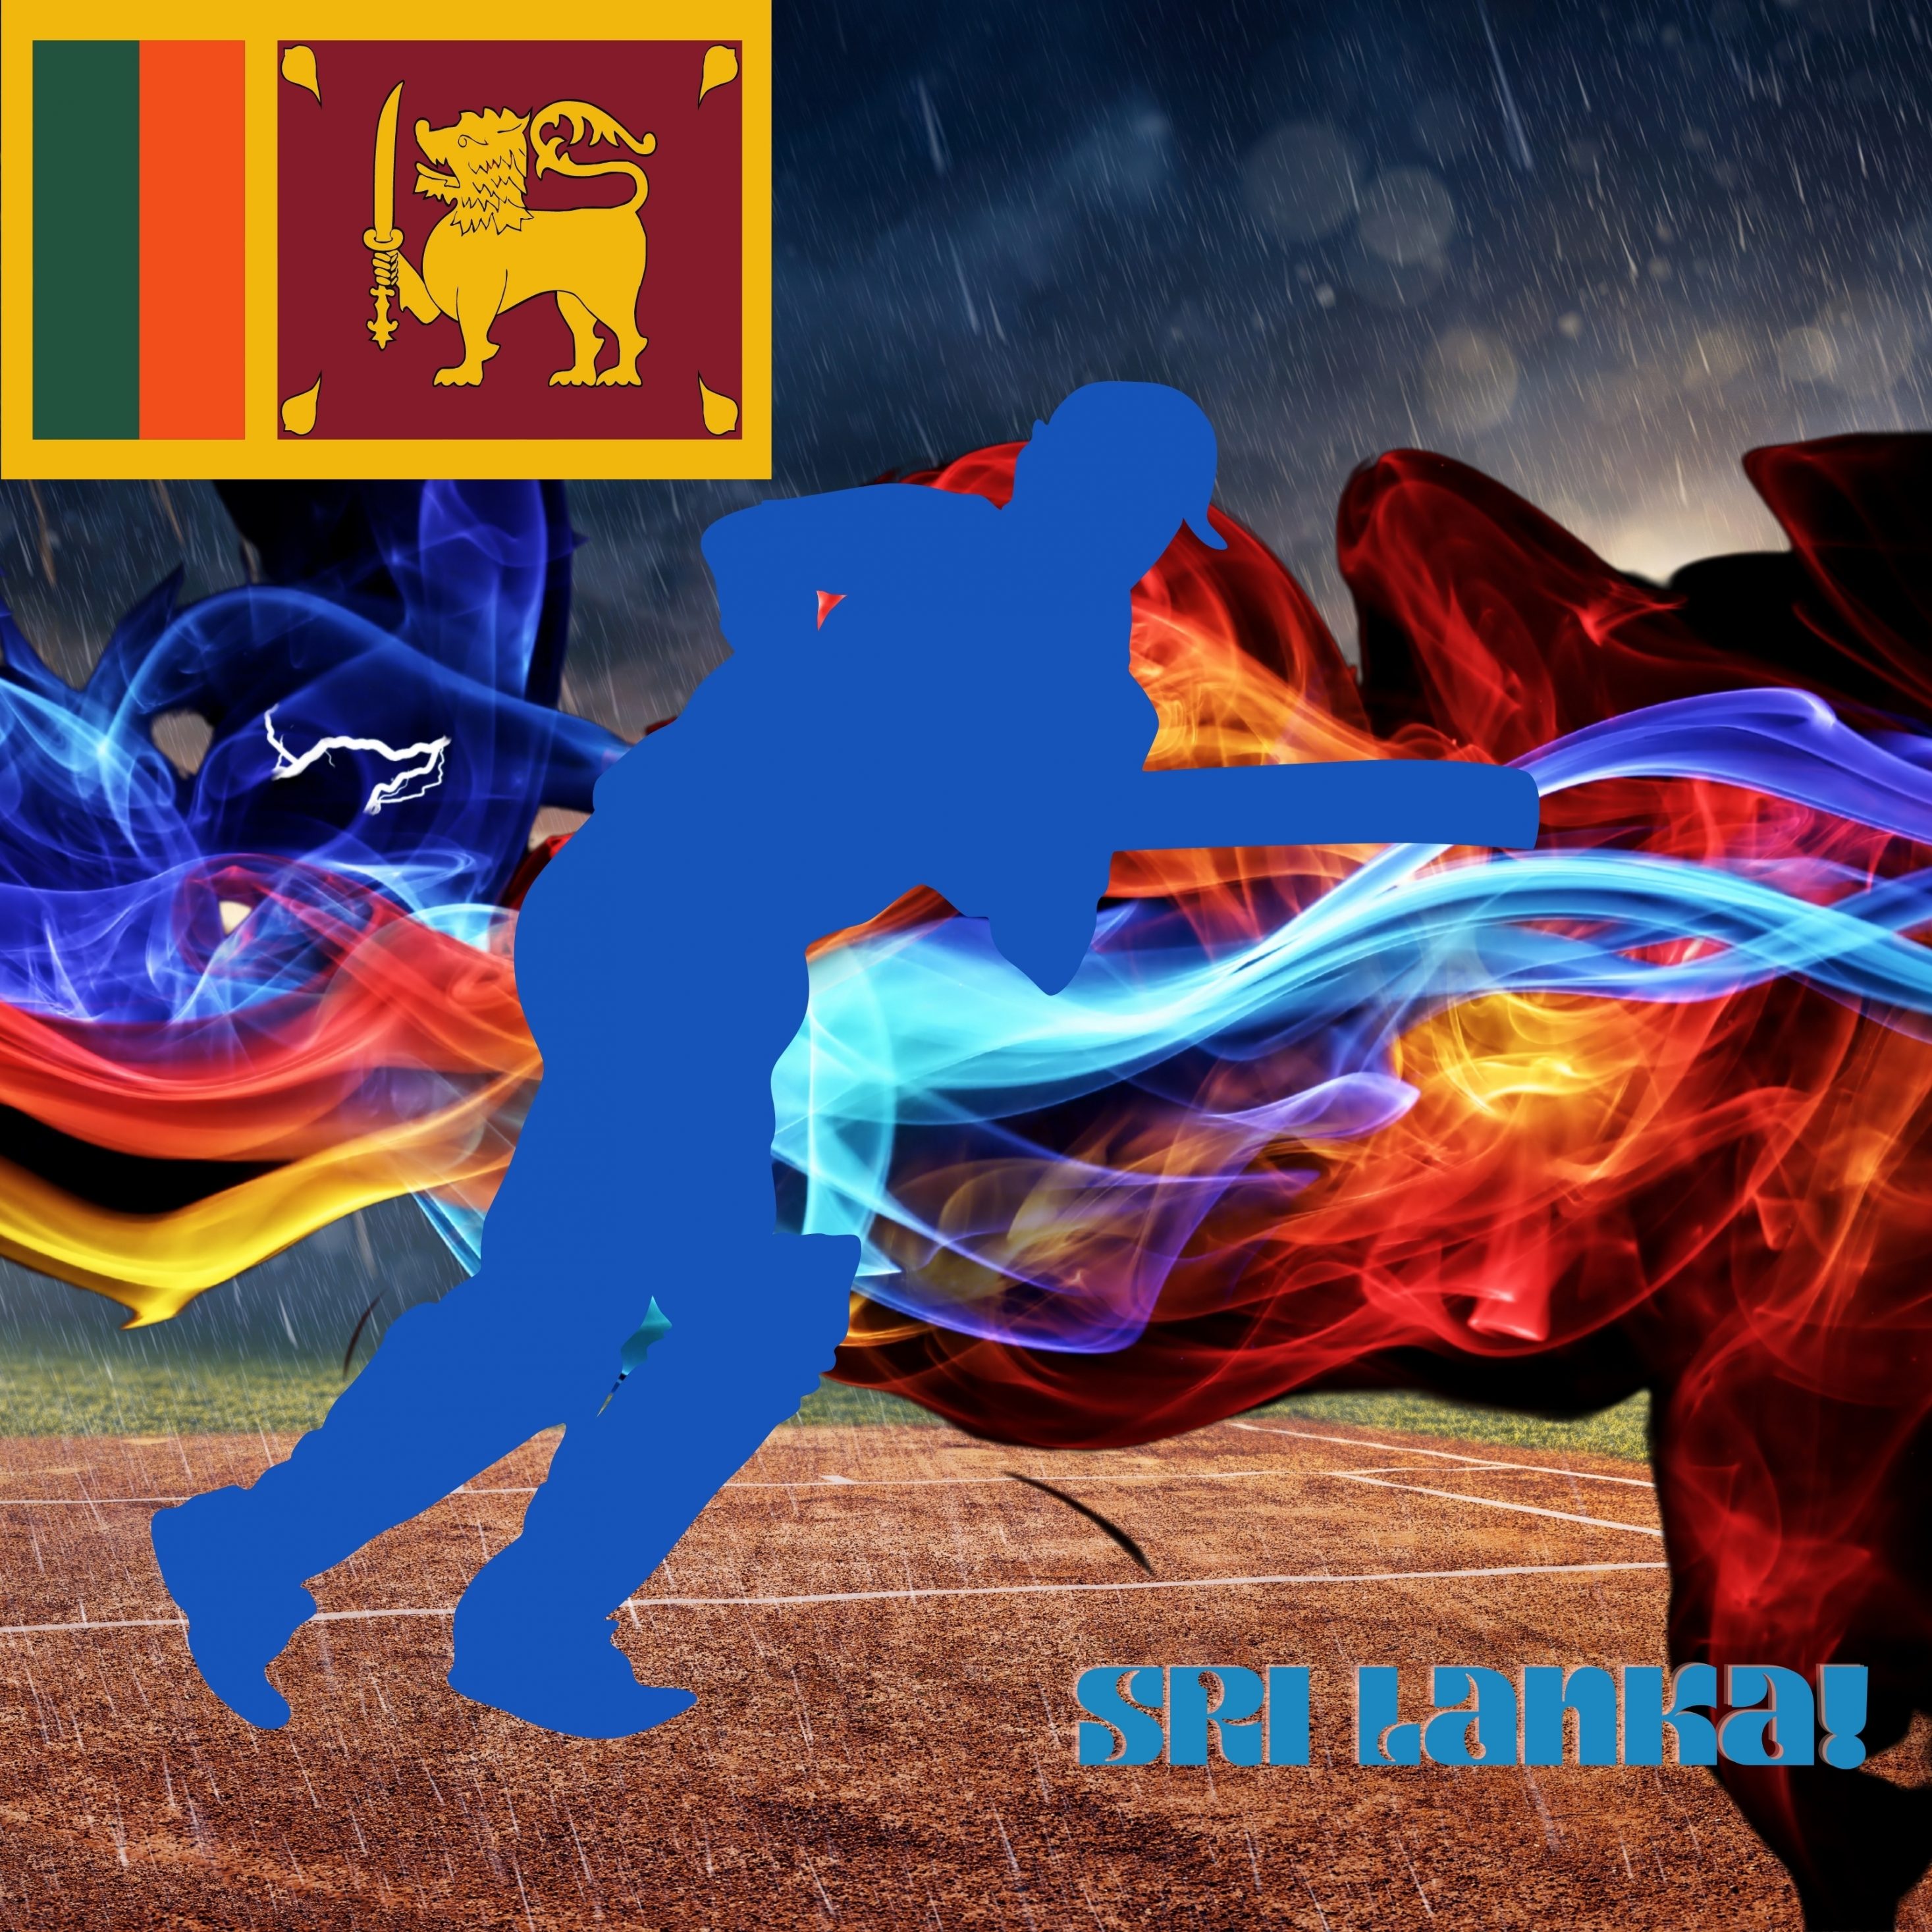 2934x2934 iOS iPad wallpaper 4k Sri Lanka Cricket Stadium iPad Wallpaper 2934x2934 pixels resolution